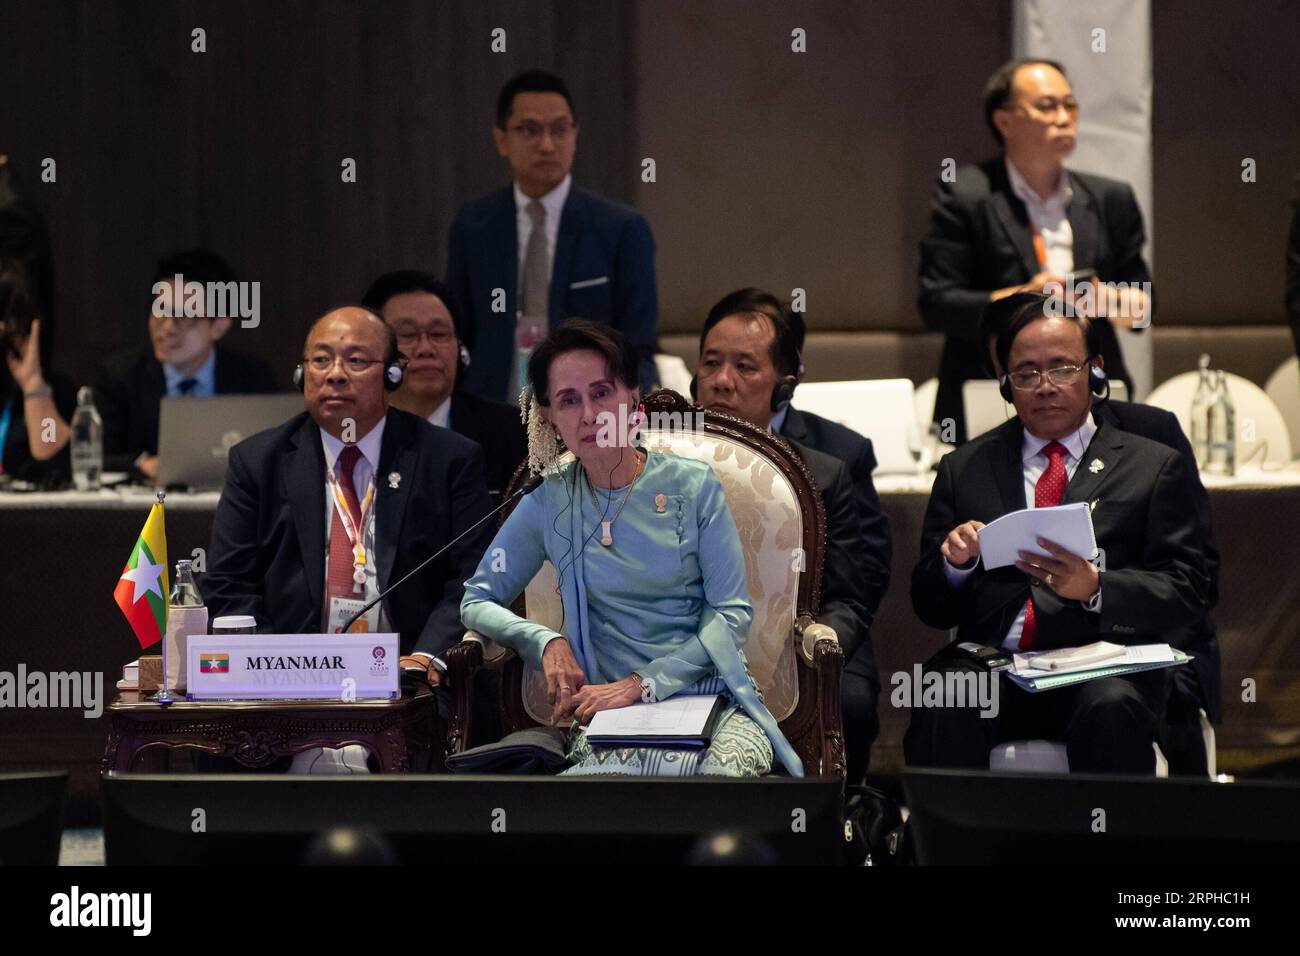 191104 -- BANGKOK, le 4 novembre 2019 -- Aung San Suu Kyi C, conseillère d'État du Myanmar, participe au 14e Sommet de l'Asie de l'est à Bangkok, Thaïlande, le 4 novembre 2019. Le sommet est un événement régional annuel réunissant 10 membres de l'Association des nations de l'Asie du Sud-est ASEAN, ainsi que la Chine, le Japon, la Corée du Sud, l'Inde, l'Australie, nouvelle-Zélande, Russie et États-Unis. SOMMET THAÏLANDE-BANGKOK-ASIE DE L'EST ZhuxWei PUBLICATIONxNOTxINxCHN Banque D'Images